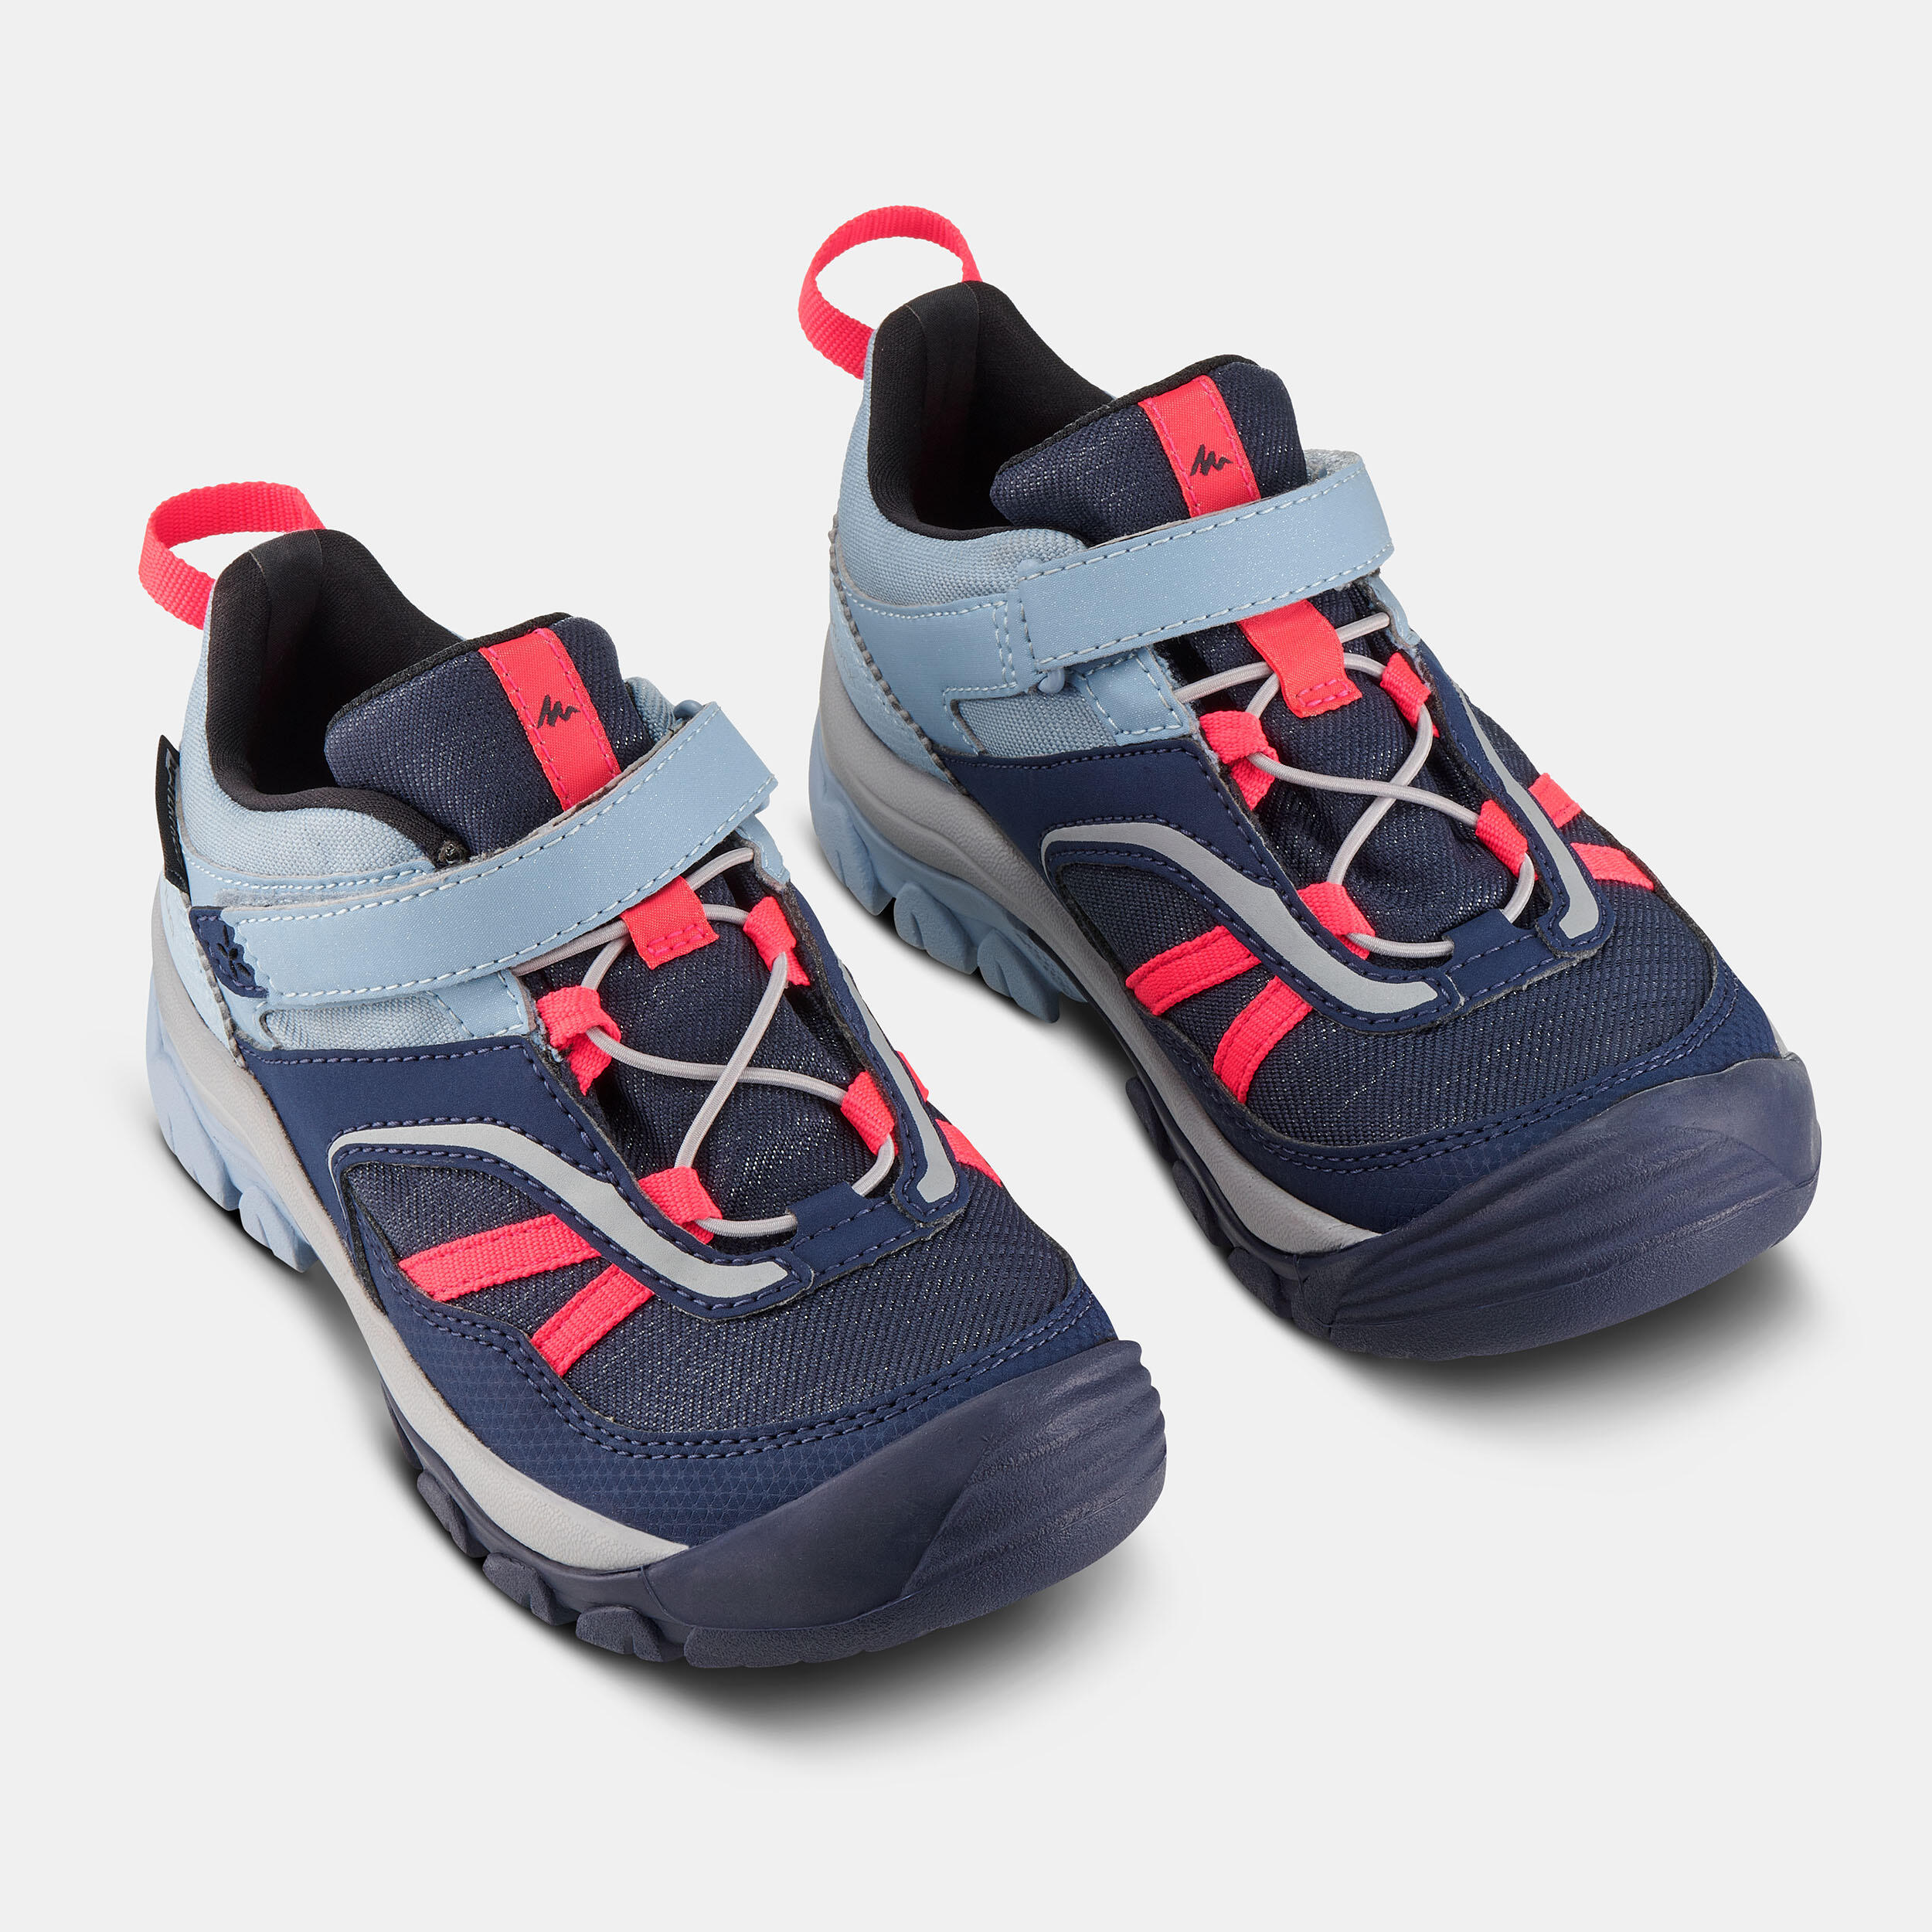 Kids' Hiking Waterproof Shoes  - CROSSROCK blue pink - C9½-1½ 4/6